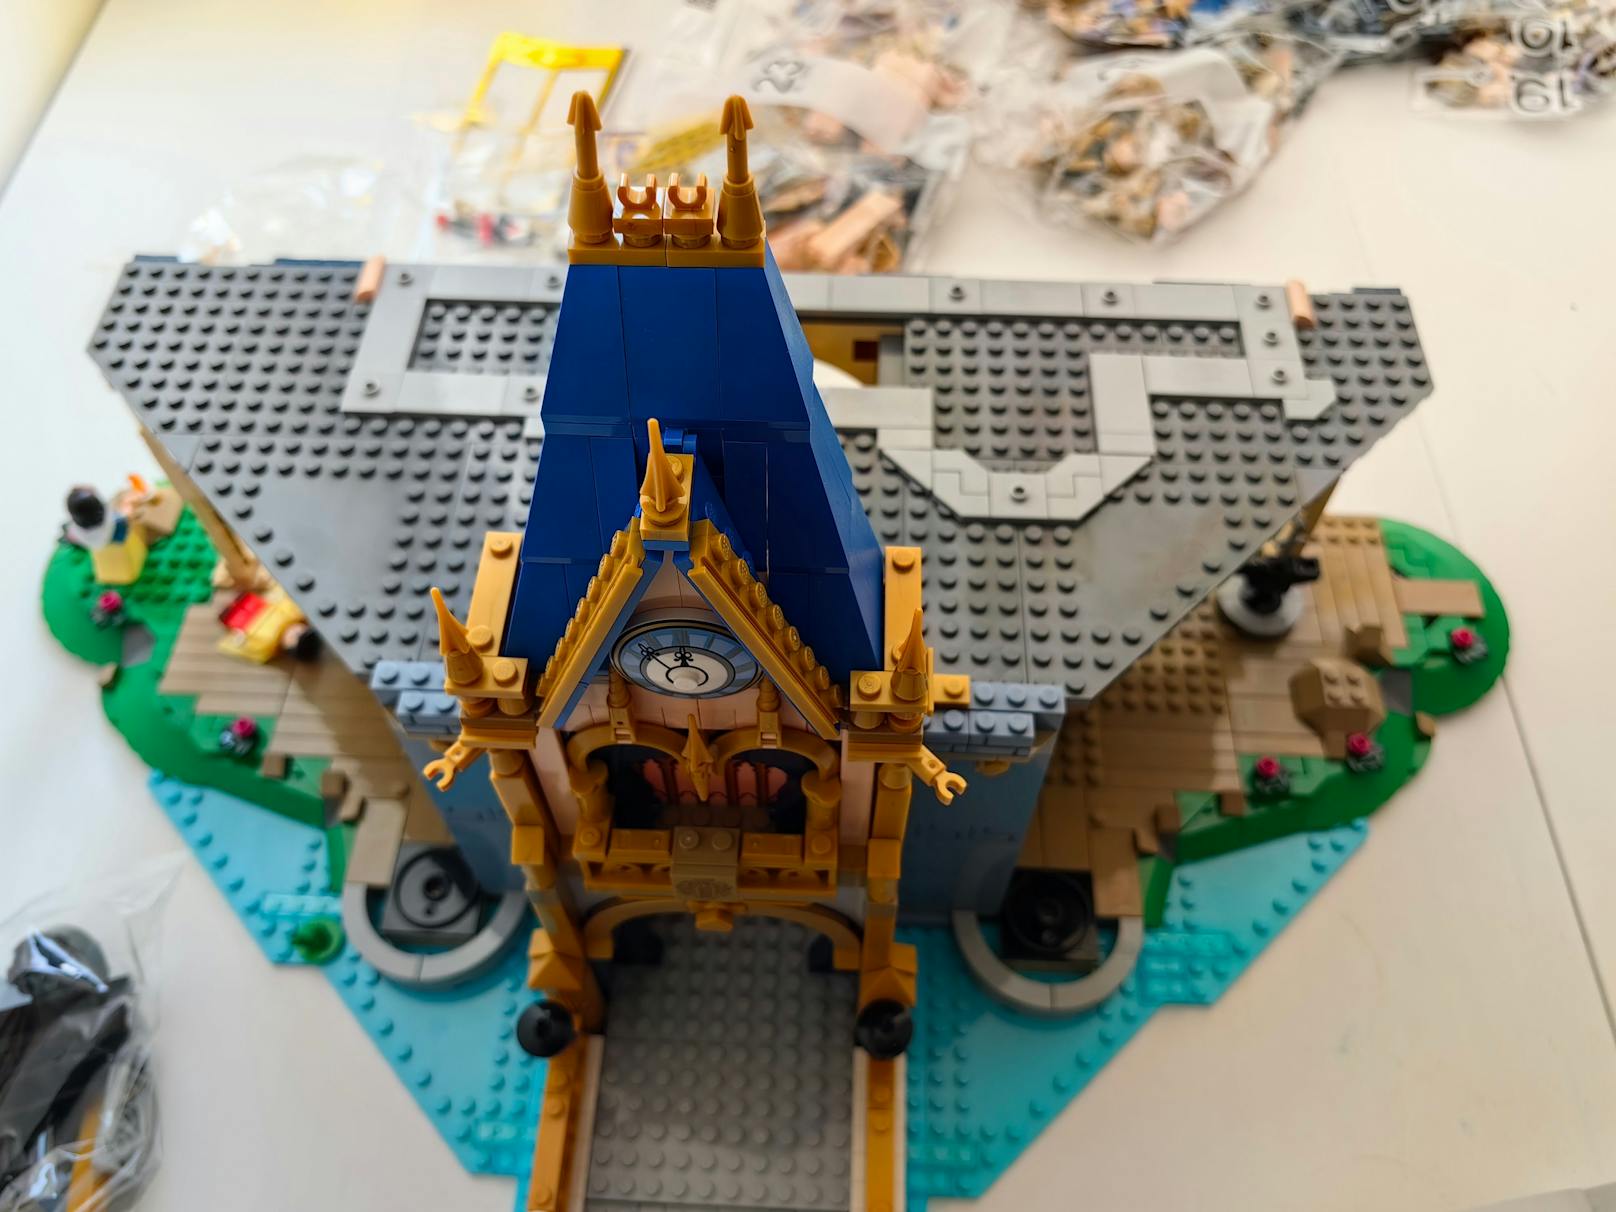 ...gleichzeitig bauen kann – für ein richtiges "Build Together"-Erlebnis. Doch Vorsicht, das Set ist vor allem für erfahrene LEGO-Kenner geeignet und fordert an einigen...